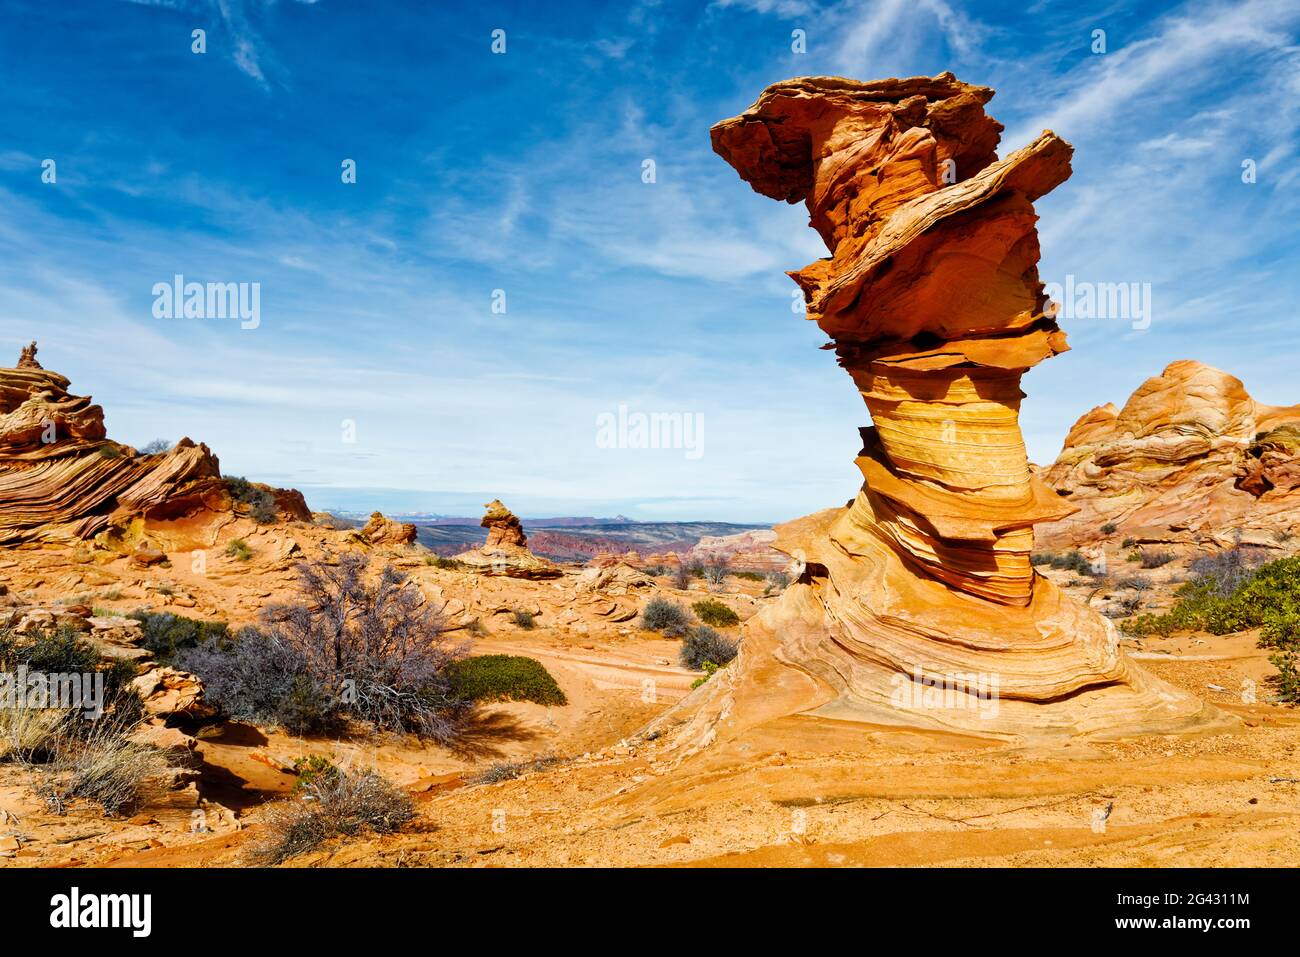 Formation de roches de grès dans le désert, Coyote Buttes Sud, Paria Canyon Vermilion Cliffs Wilderness, Arizona, États-Unis Banque D'Images